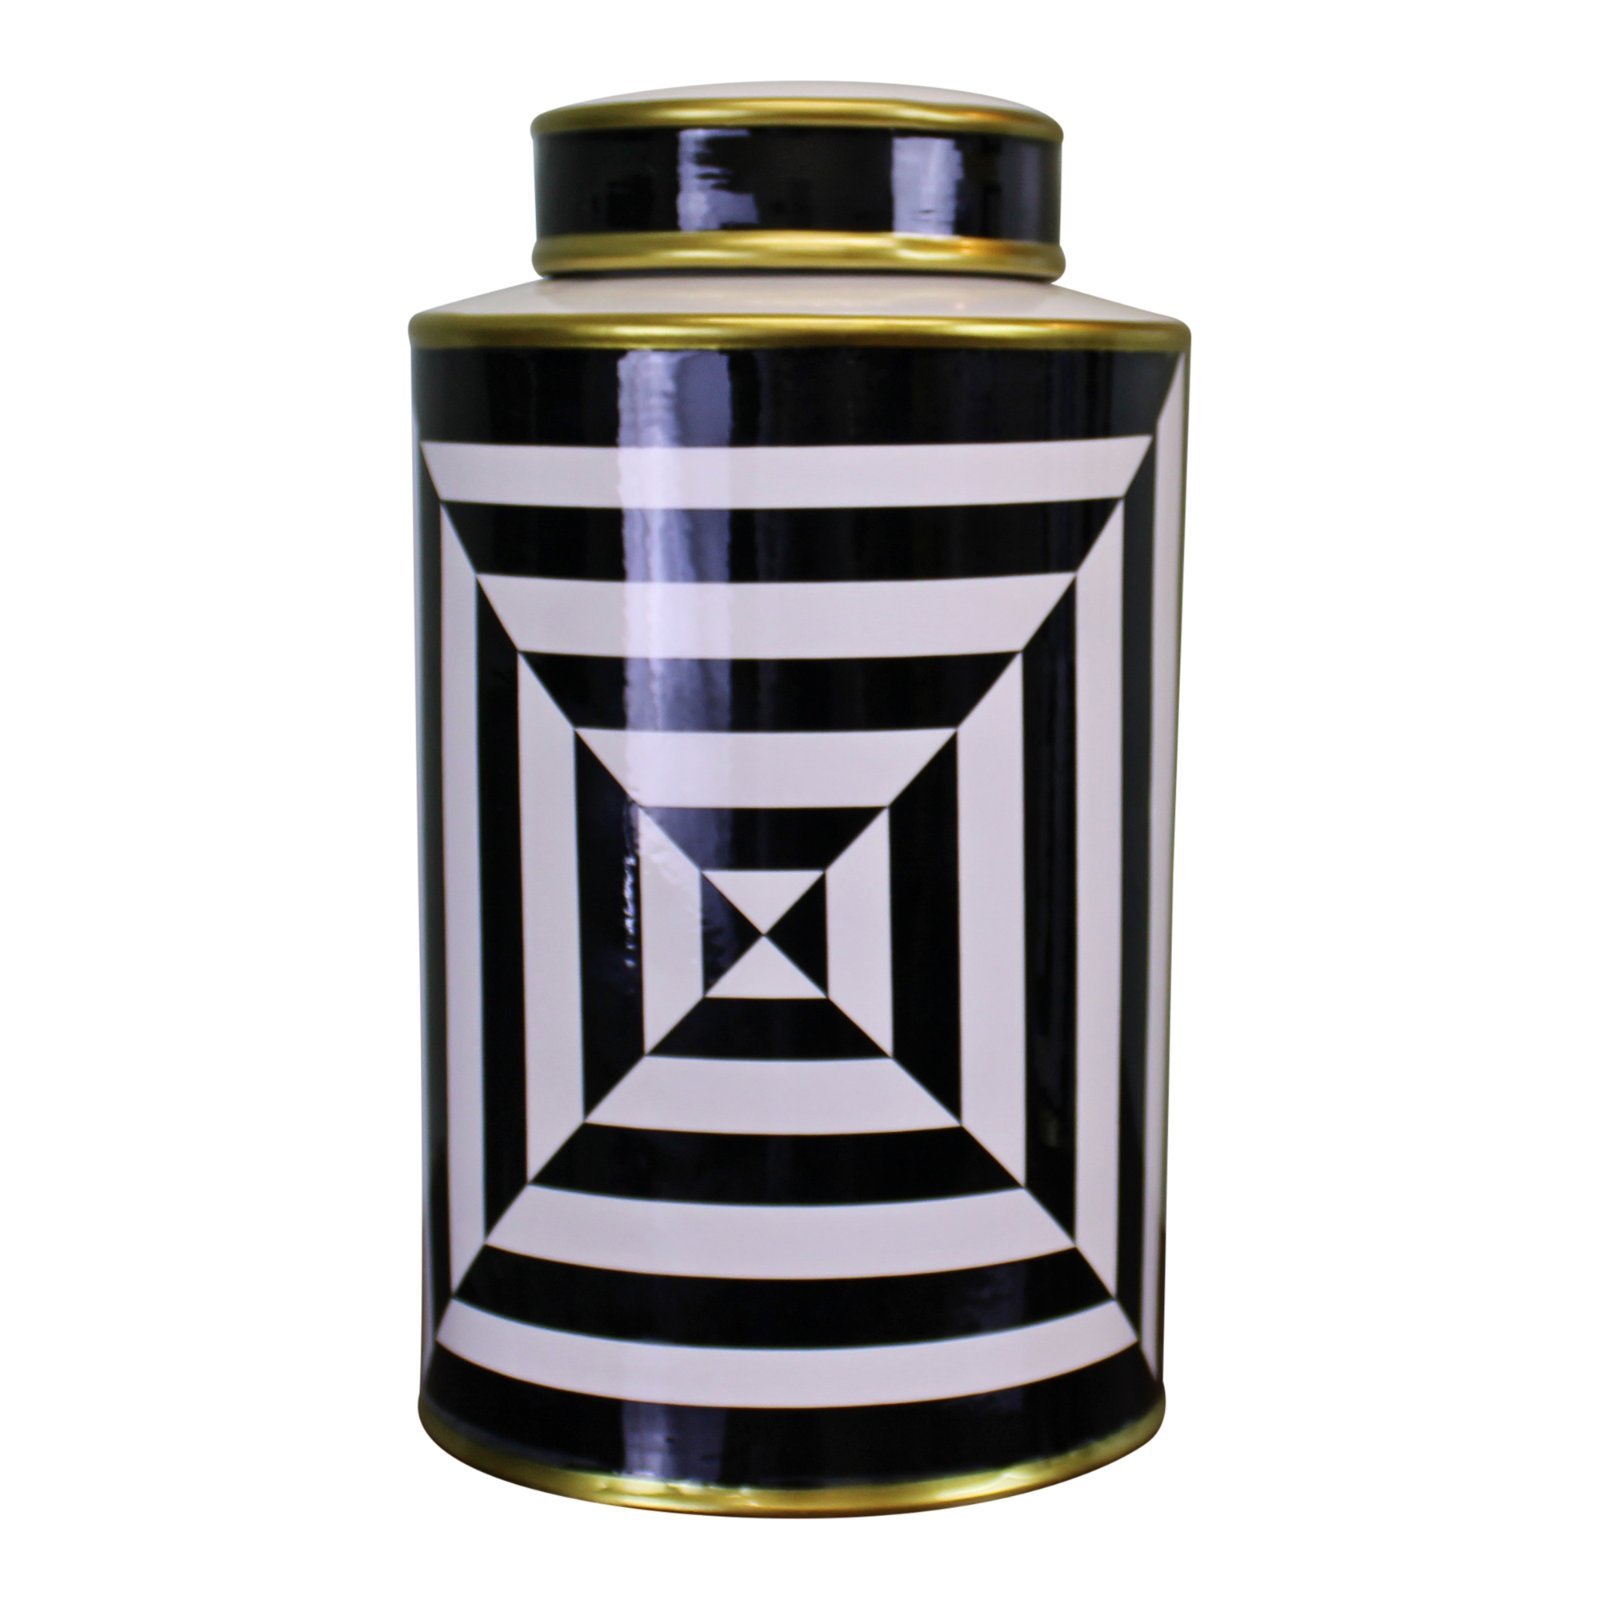 Black/White/Gold Ceramic Lidded Vase, Geometric Design 29cm